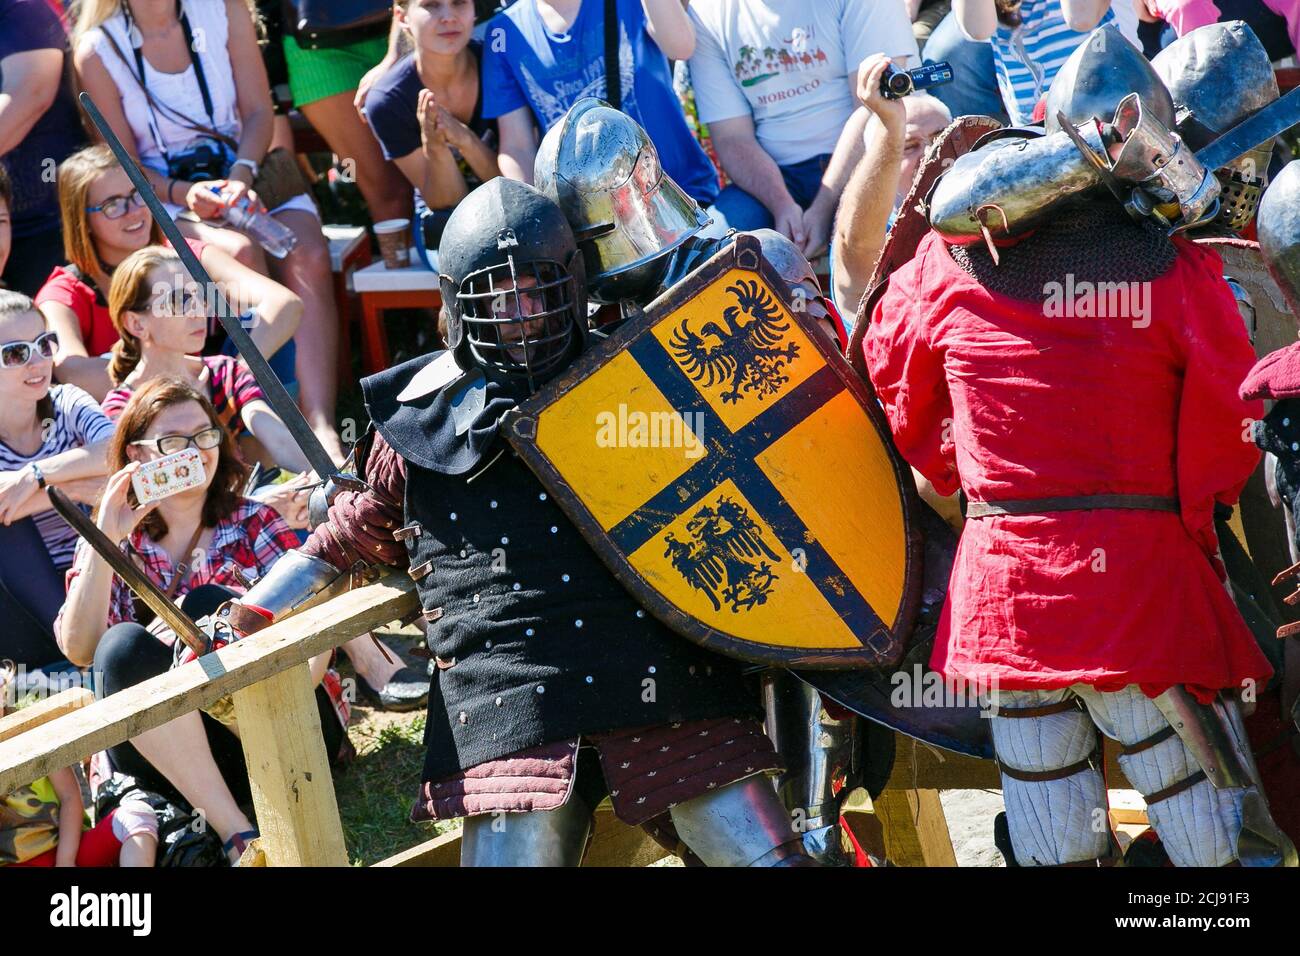 Knight Tournament. Mittelalterliche Restauratoren kämpfen mit Schwertern in Rüstung bei einem ritterlichen Turnier Stockfoto